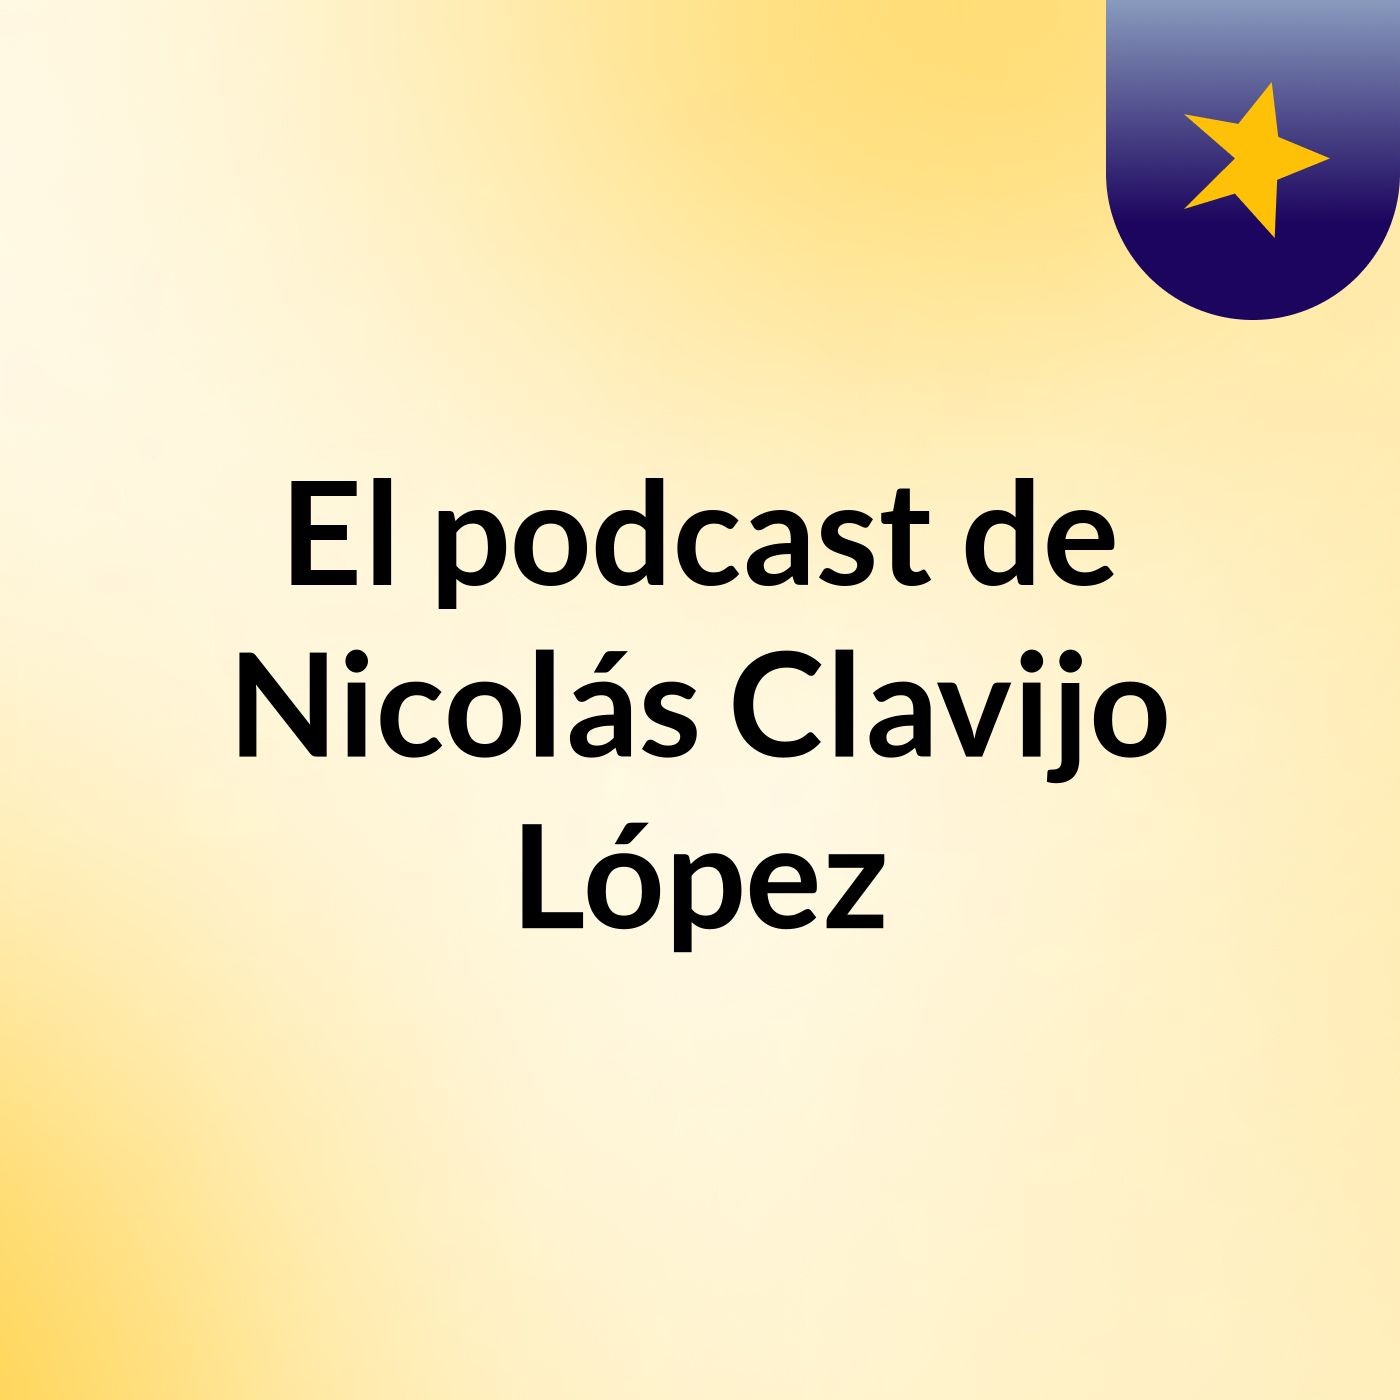 El podcast de Nicolás Clavijo López